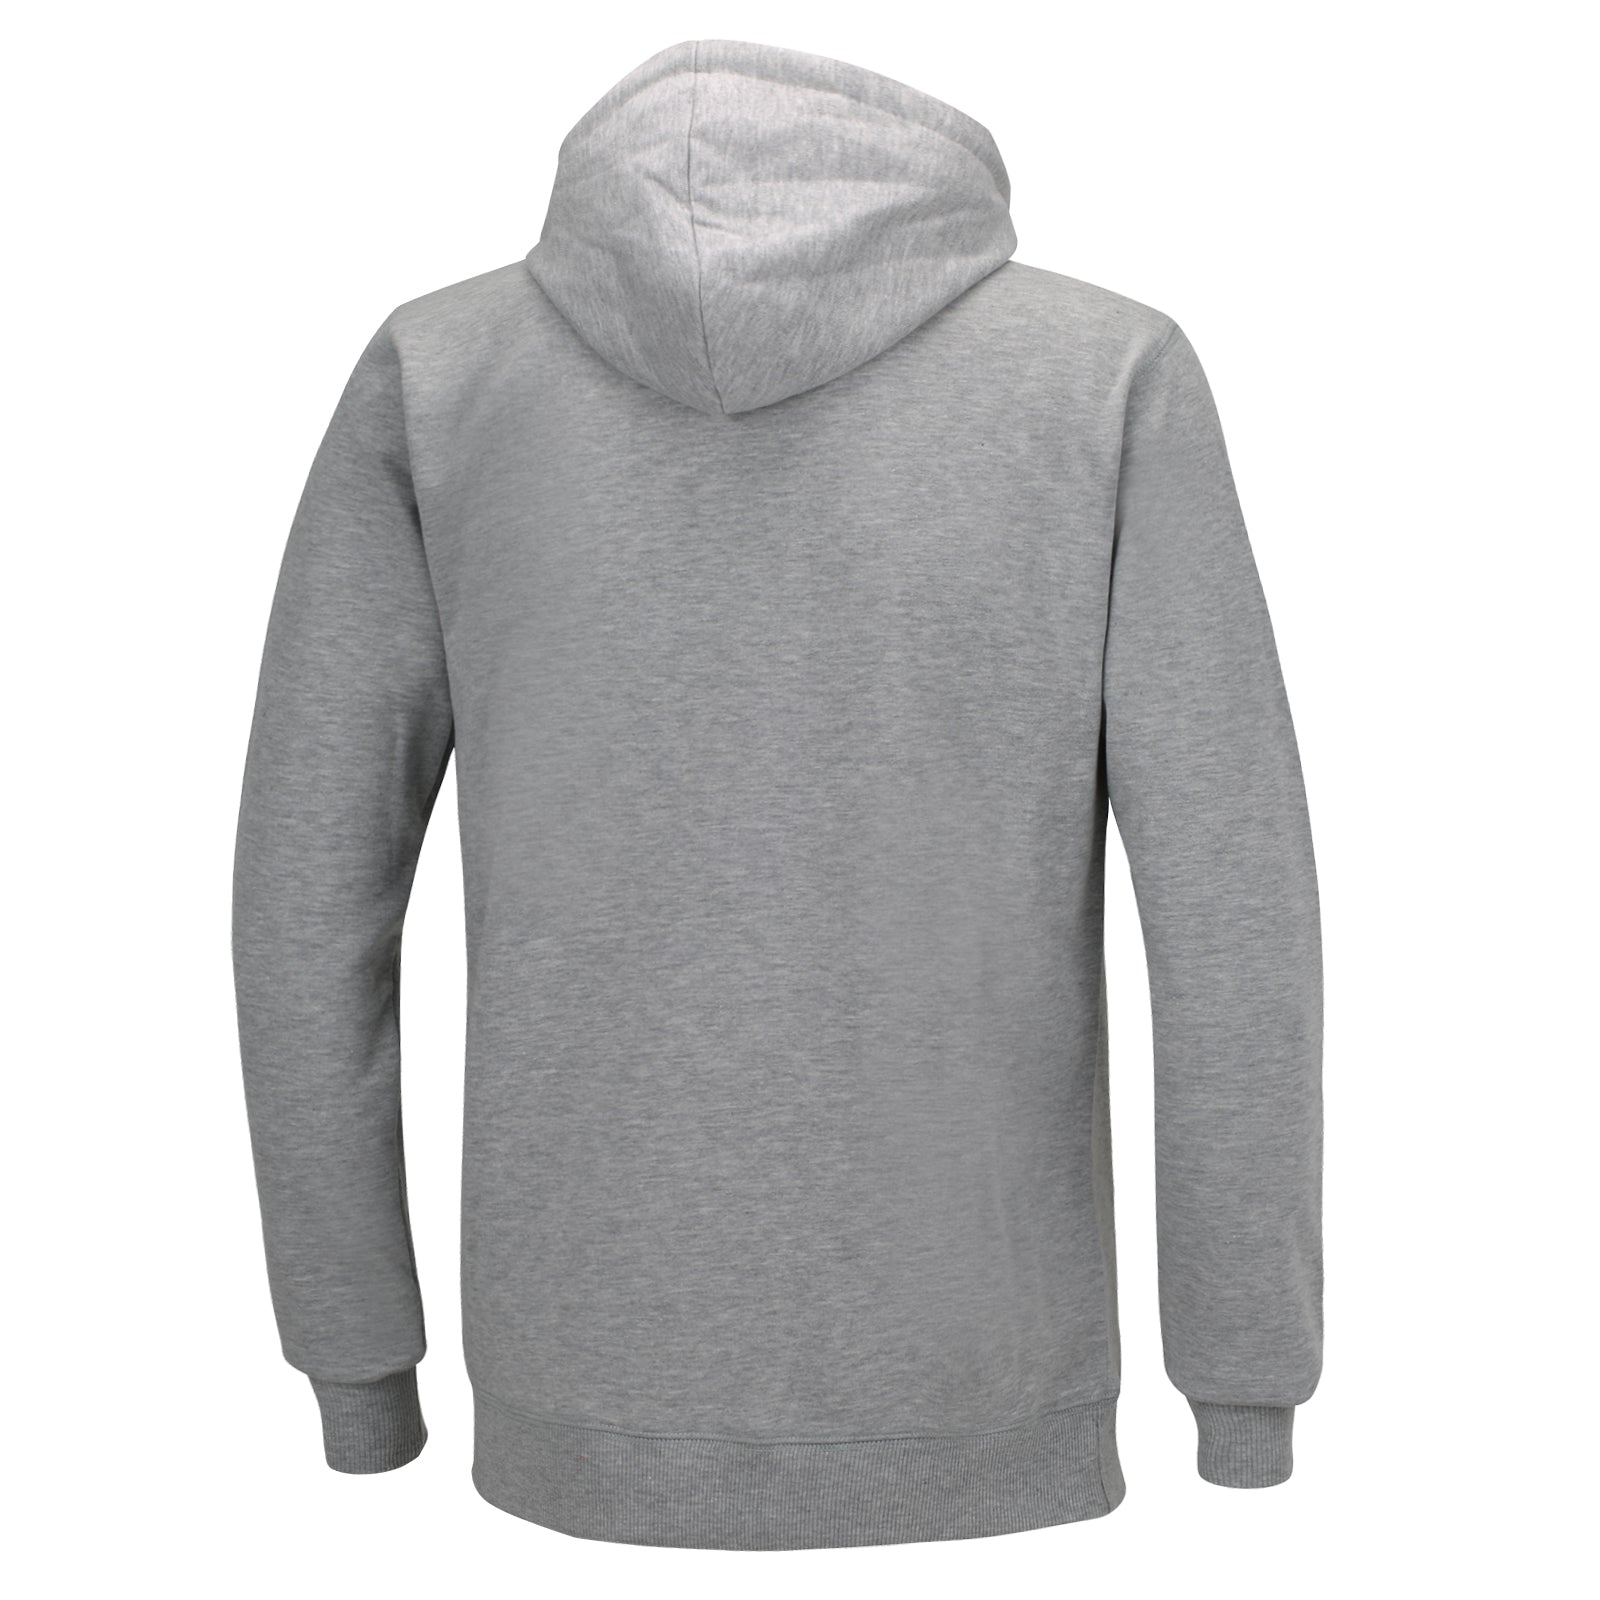 Sweatshirt-mit-kapuze-winter-thermo-pro-hoodie-sweater-herren-damen-s-m-l-xl-xxl-melange-schwarz-back